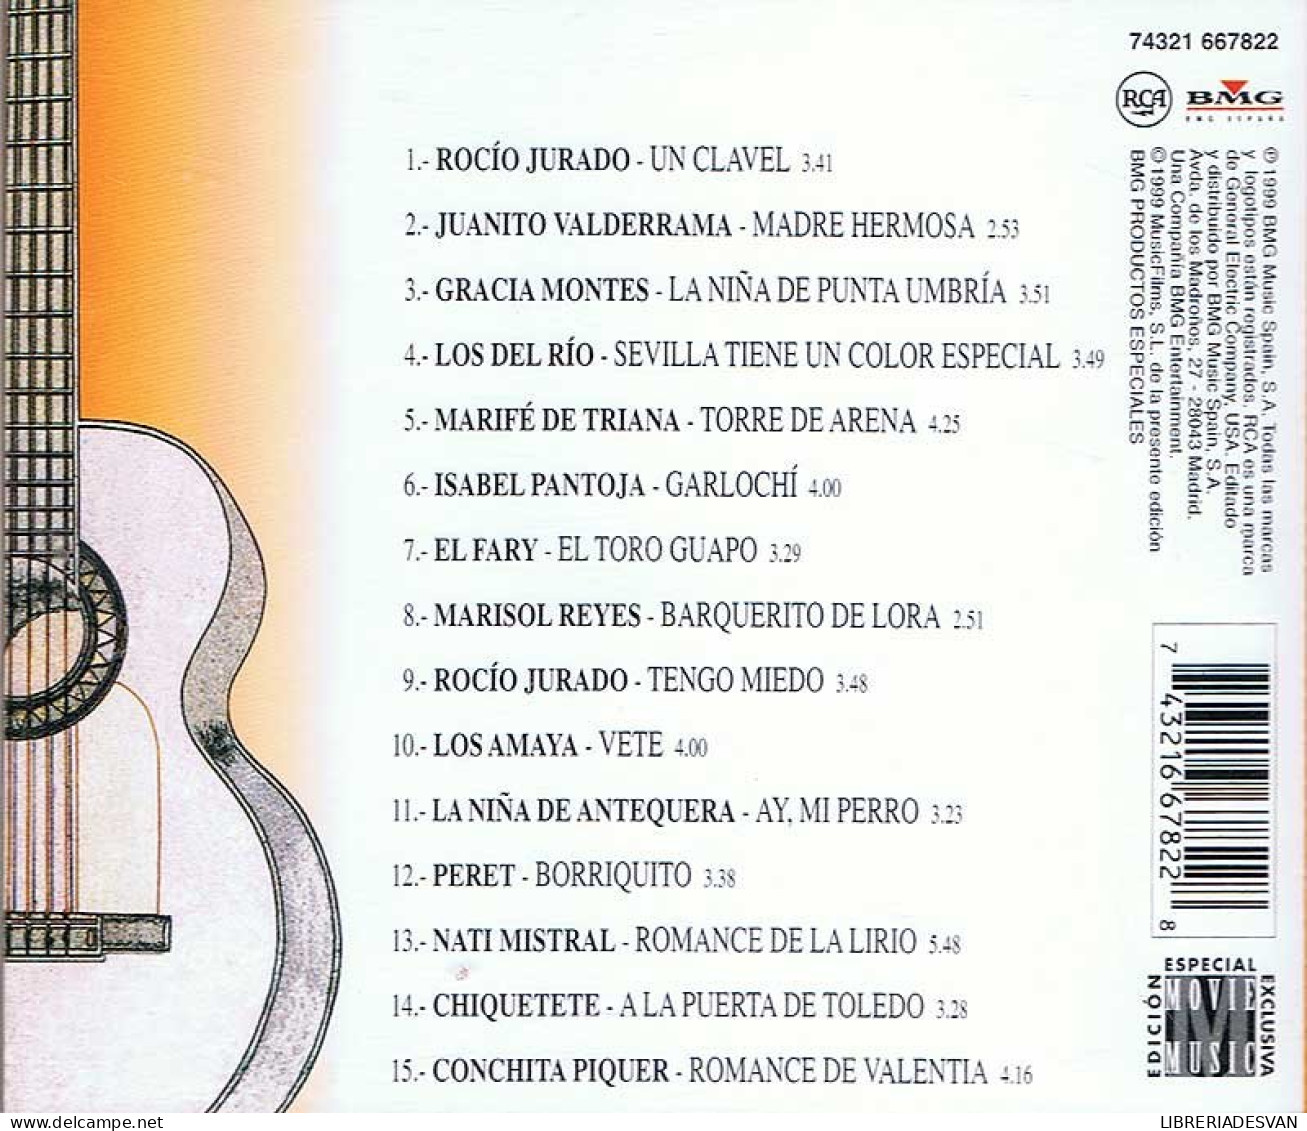 Arte Y Sentimiento 2. Rocío Jurado. Juanito Valderrama... CD - Sonstige - Spanische Musik